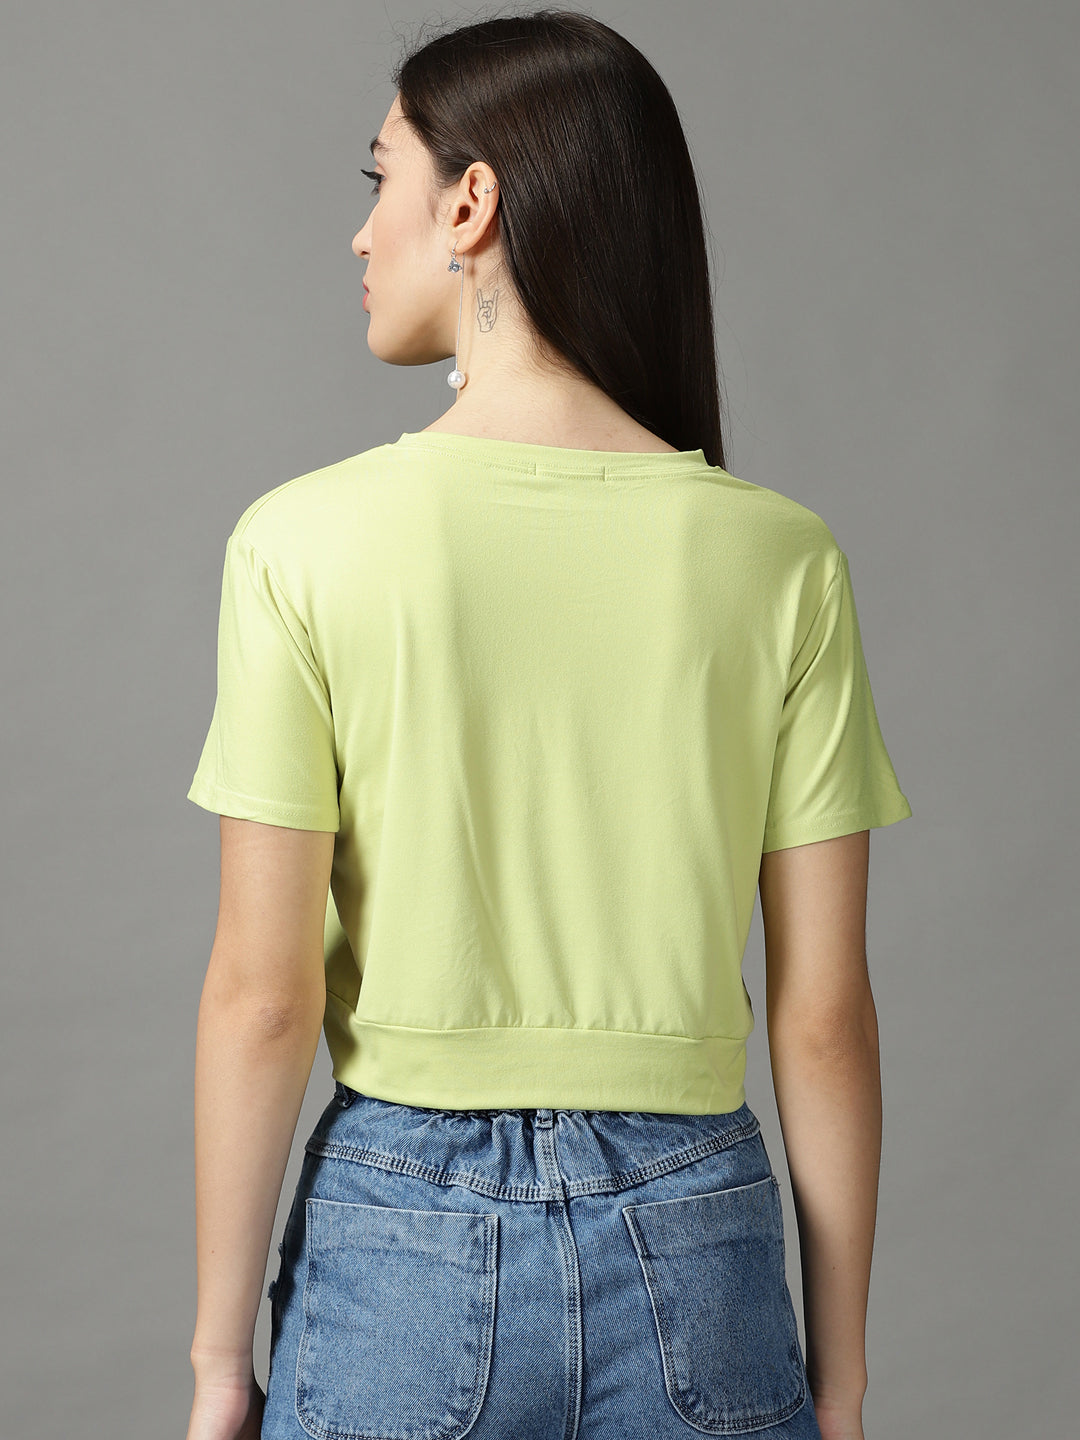 Women's Green Solid Crop Top